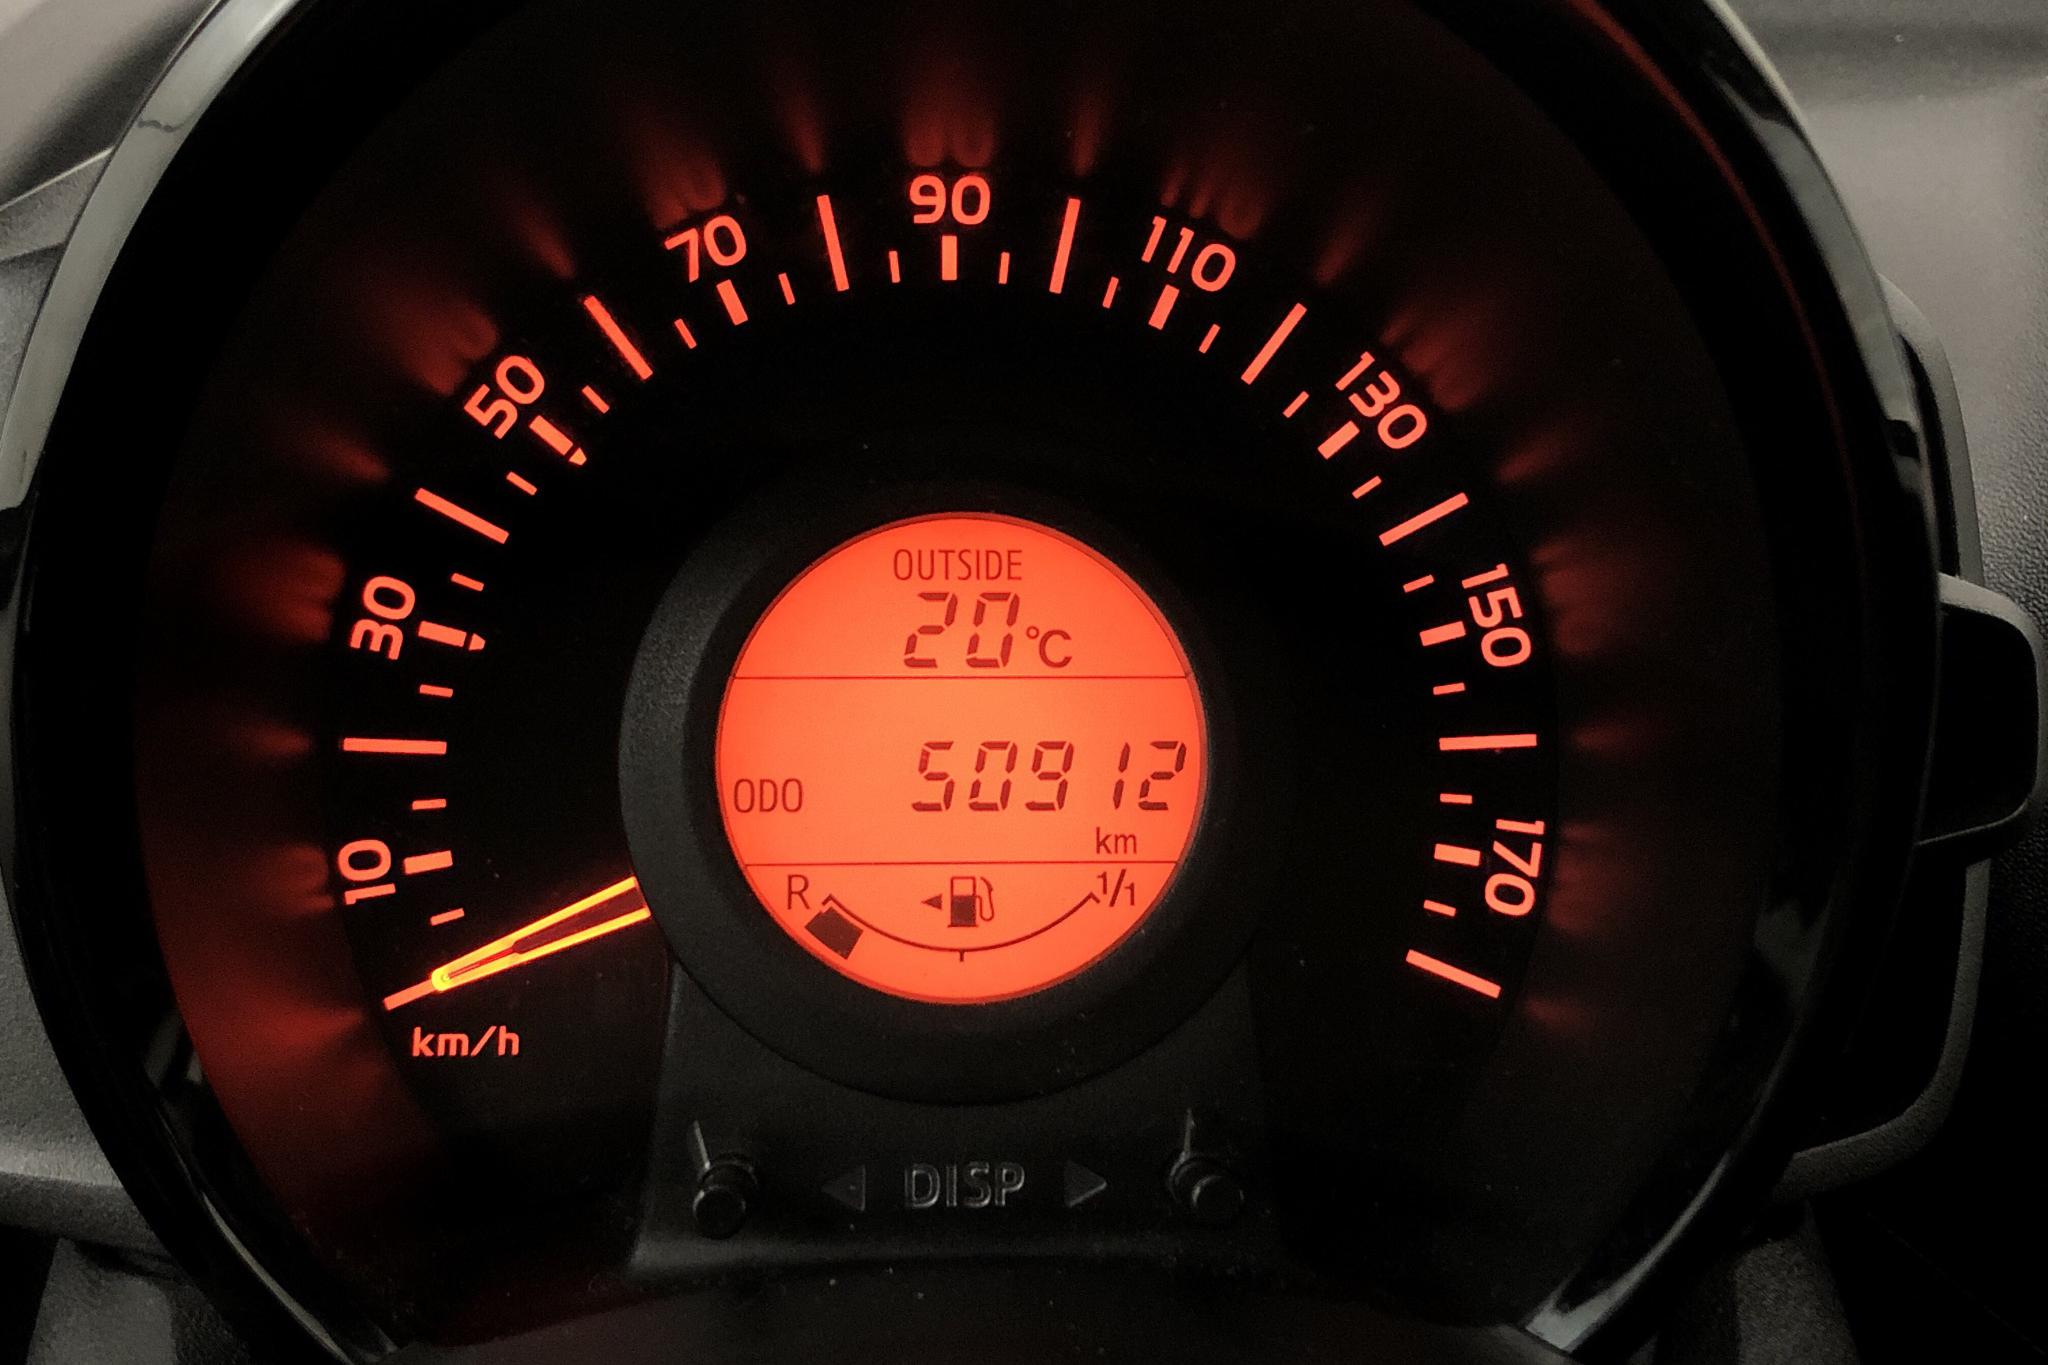 Peugeot 108 PureTech 5dr (68hk) - 50 920 km - Manual - white - 2015